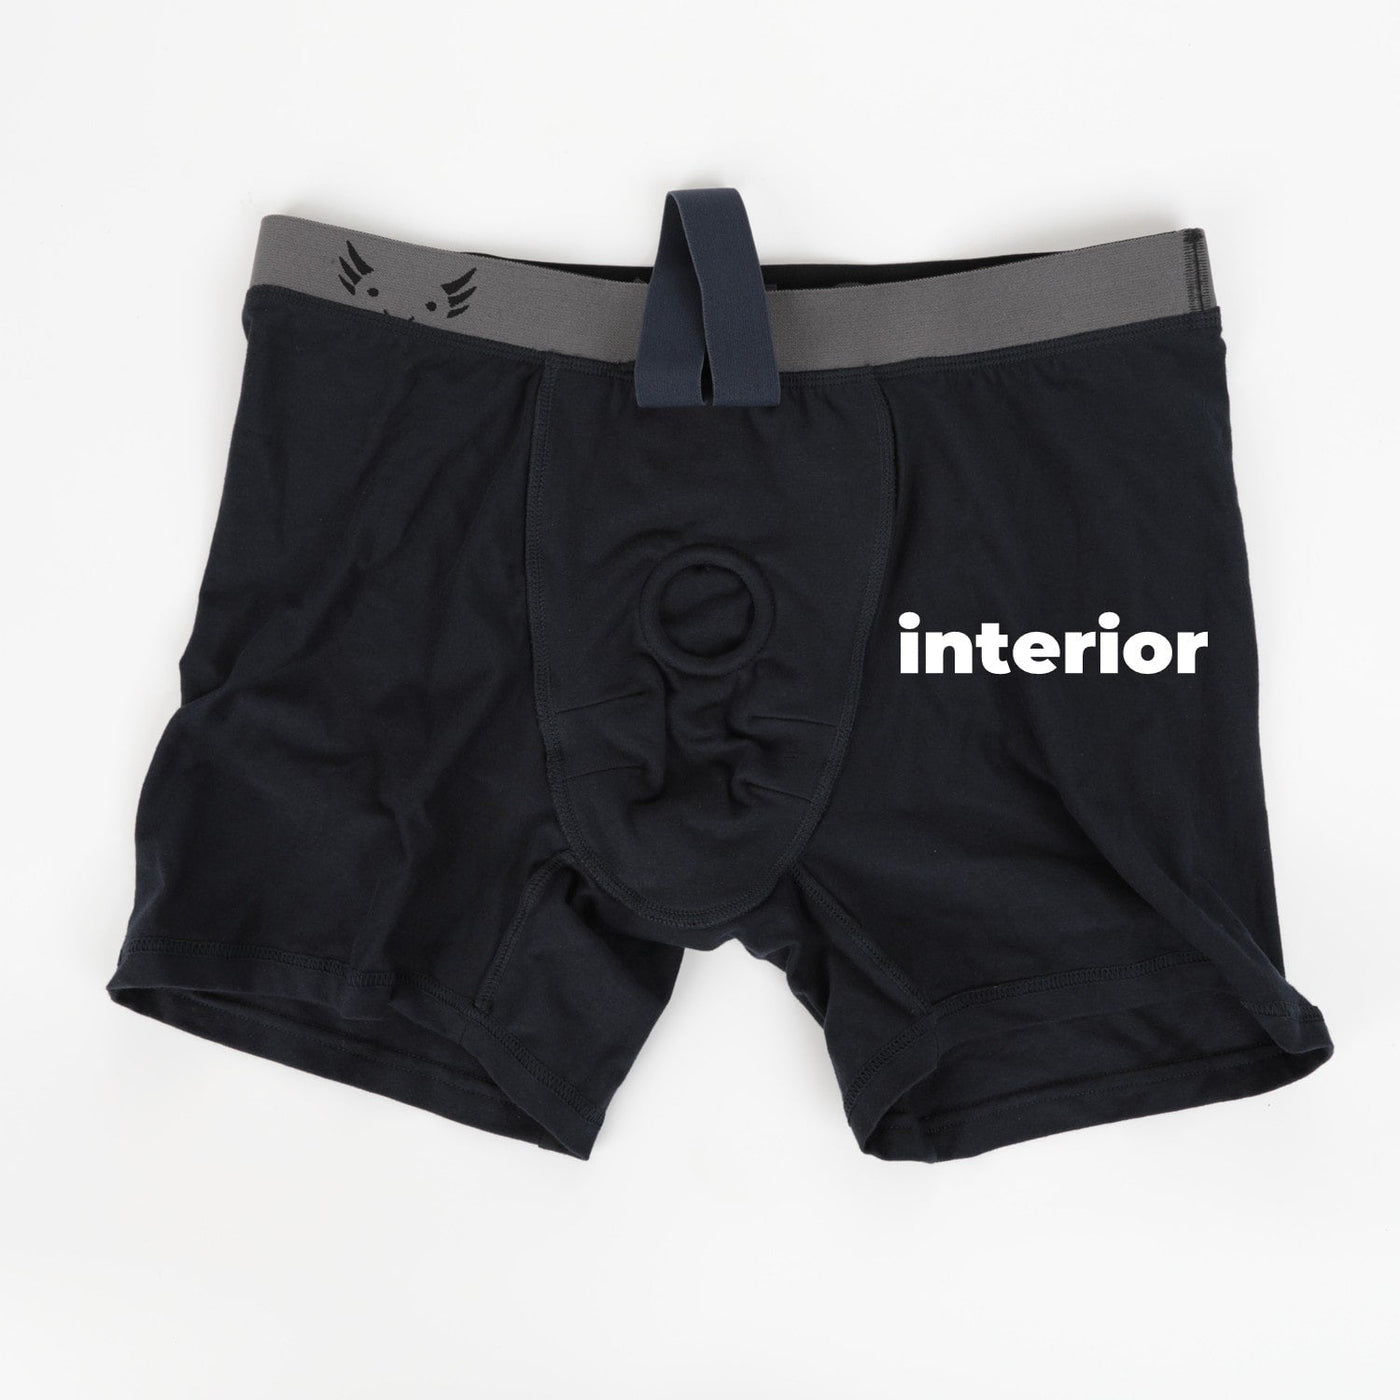 FTM Packer underwear- AOMUO